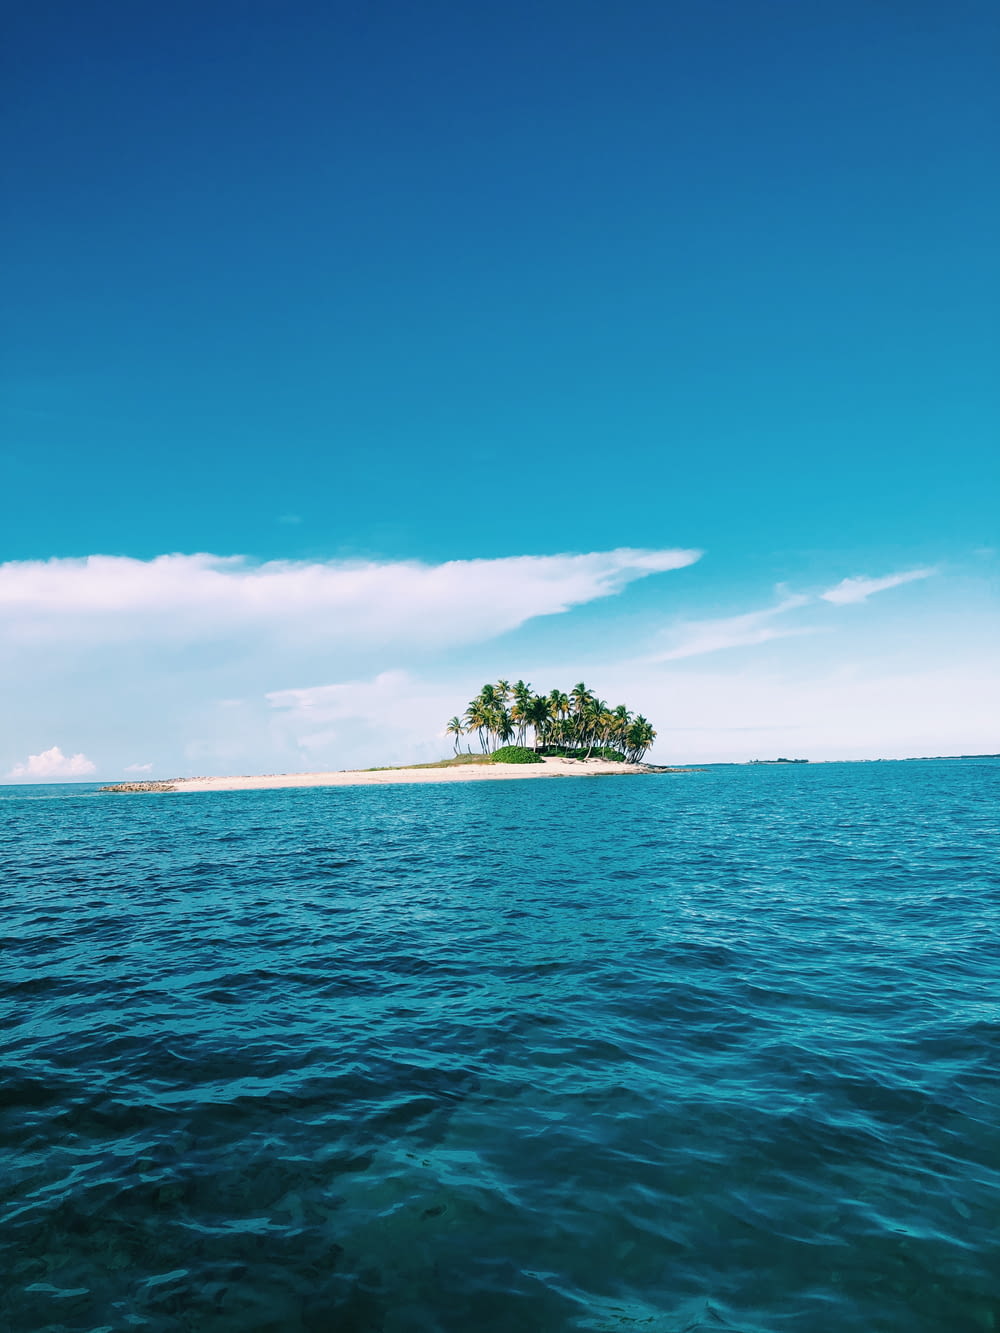 árvores verdes na ilha cercada pela água do mar sob o céu azul durante o dia